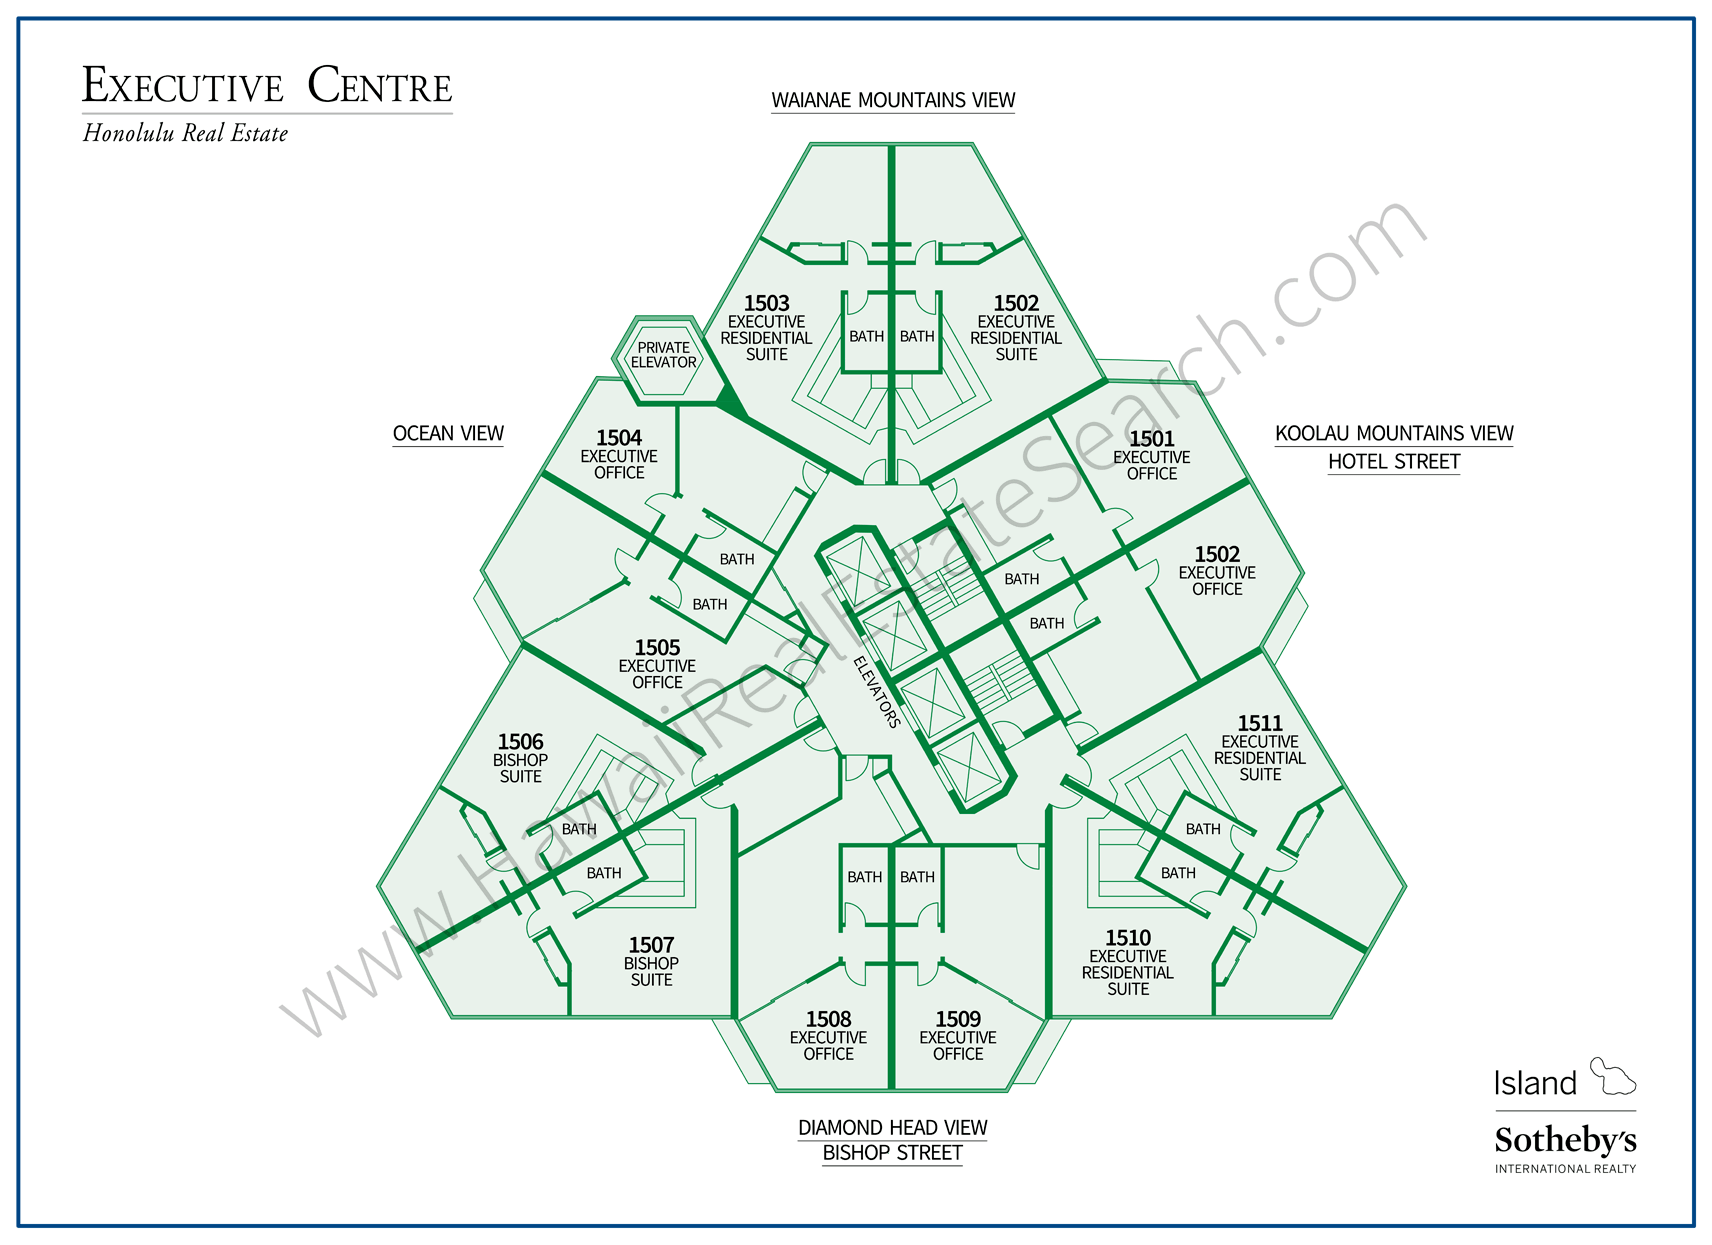 Executive Centre Map Honolulu